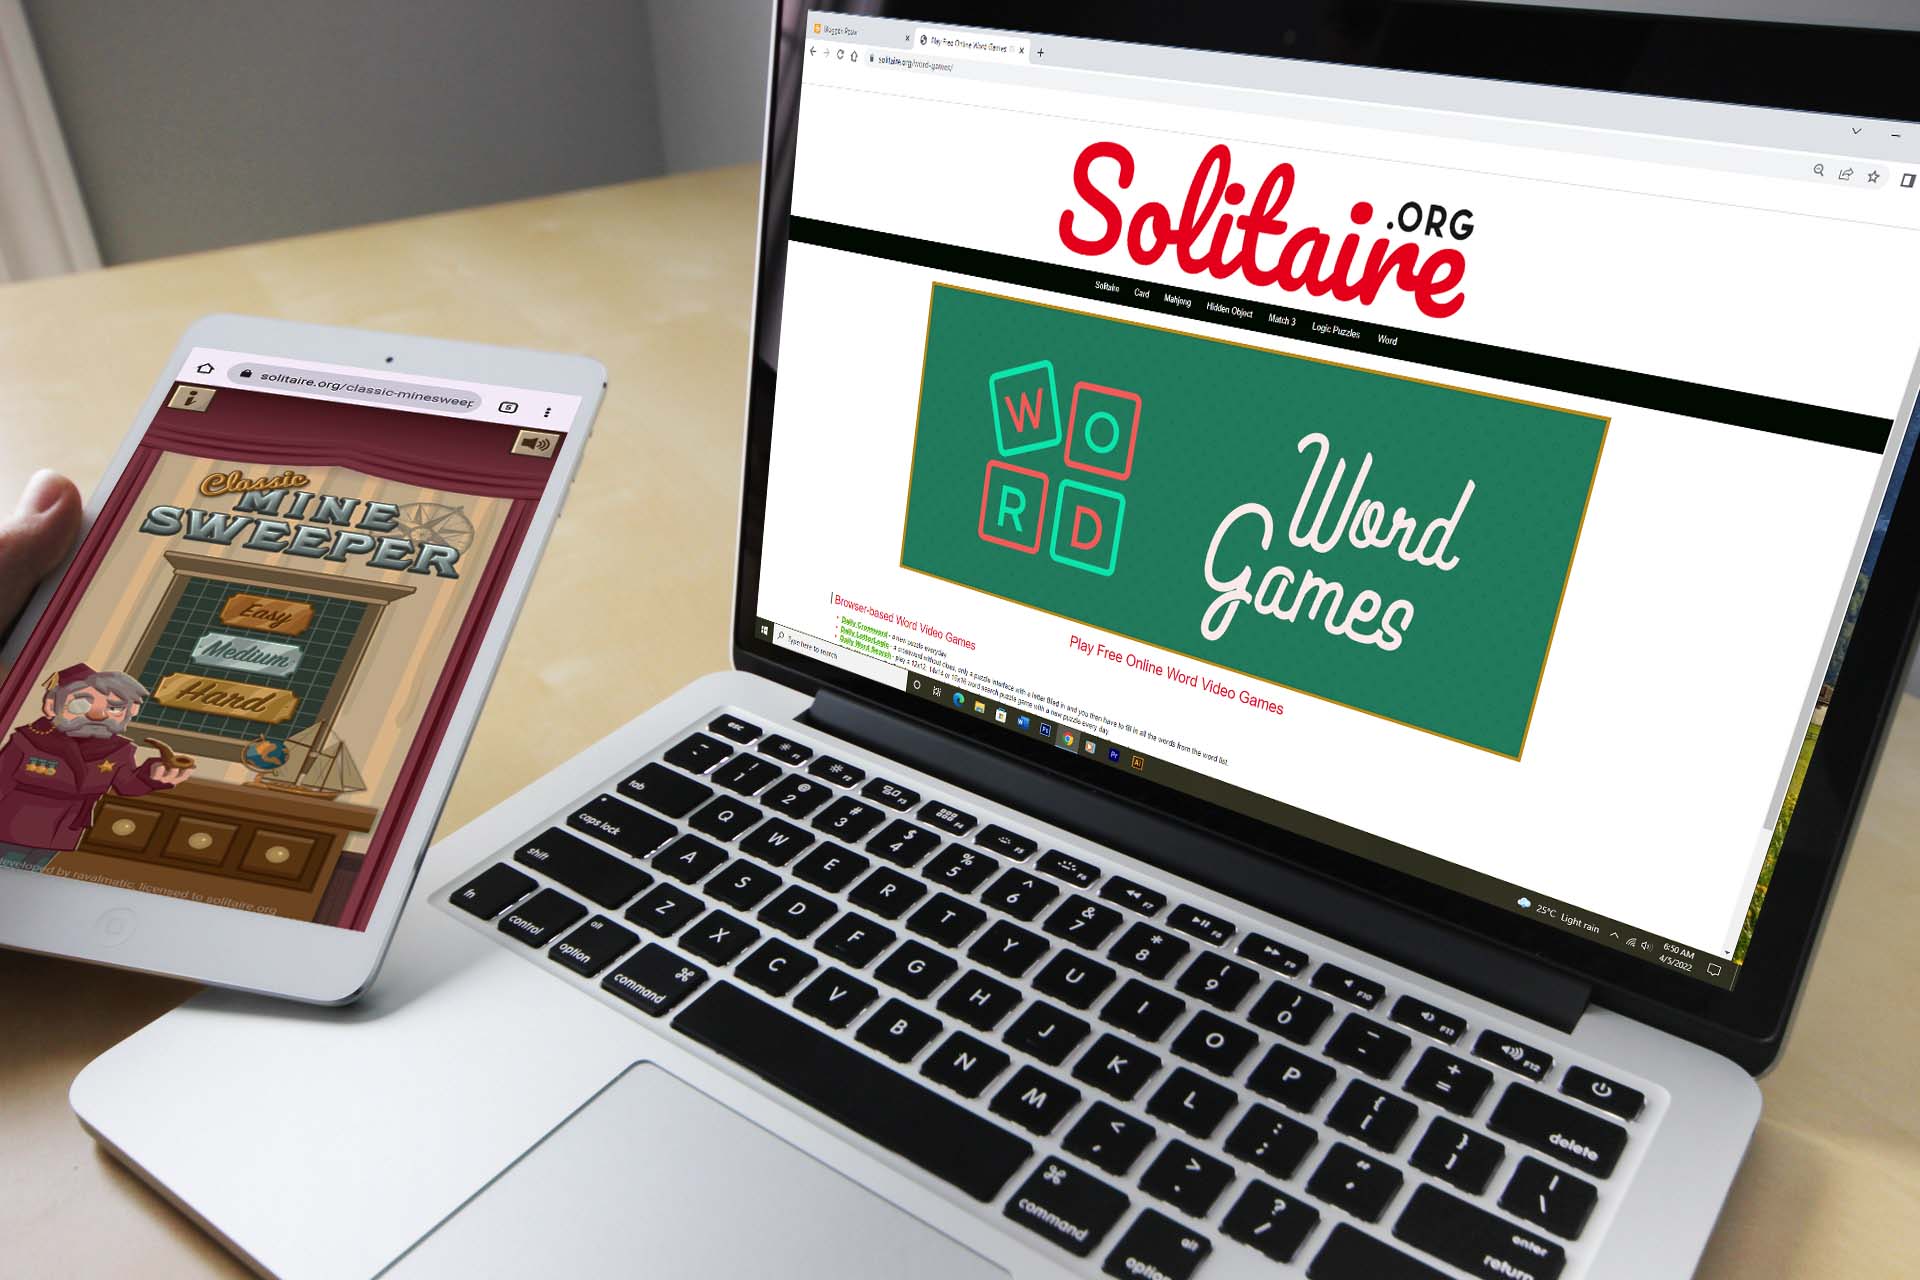 Game Online Percuma di Solitaire.org Tanpa Download